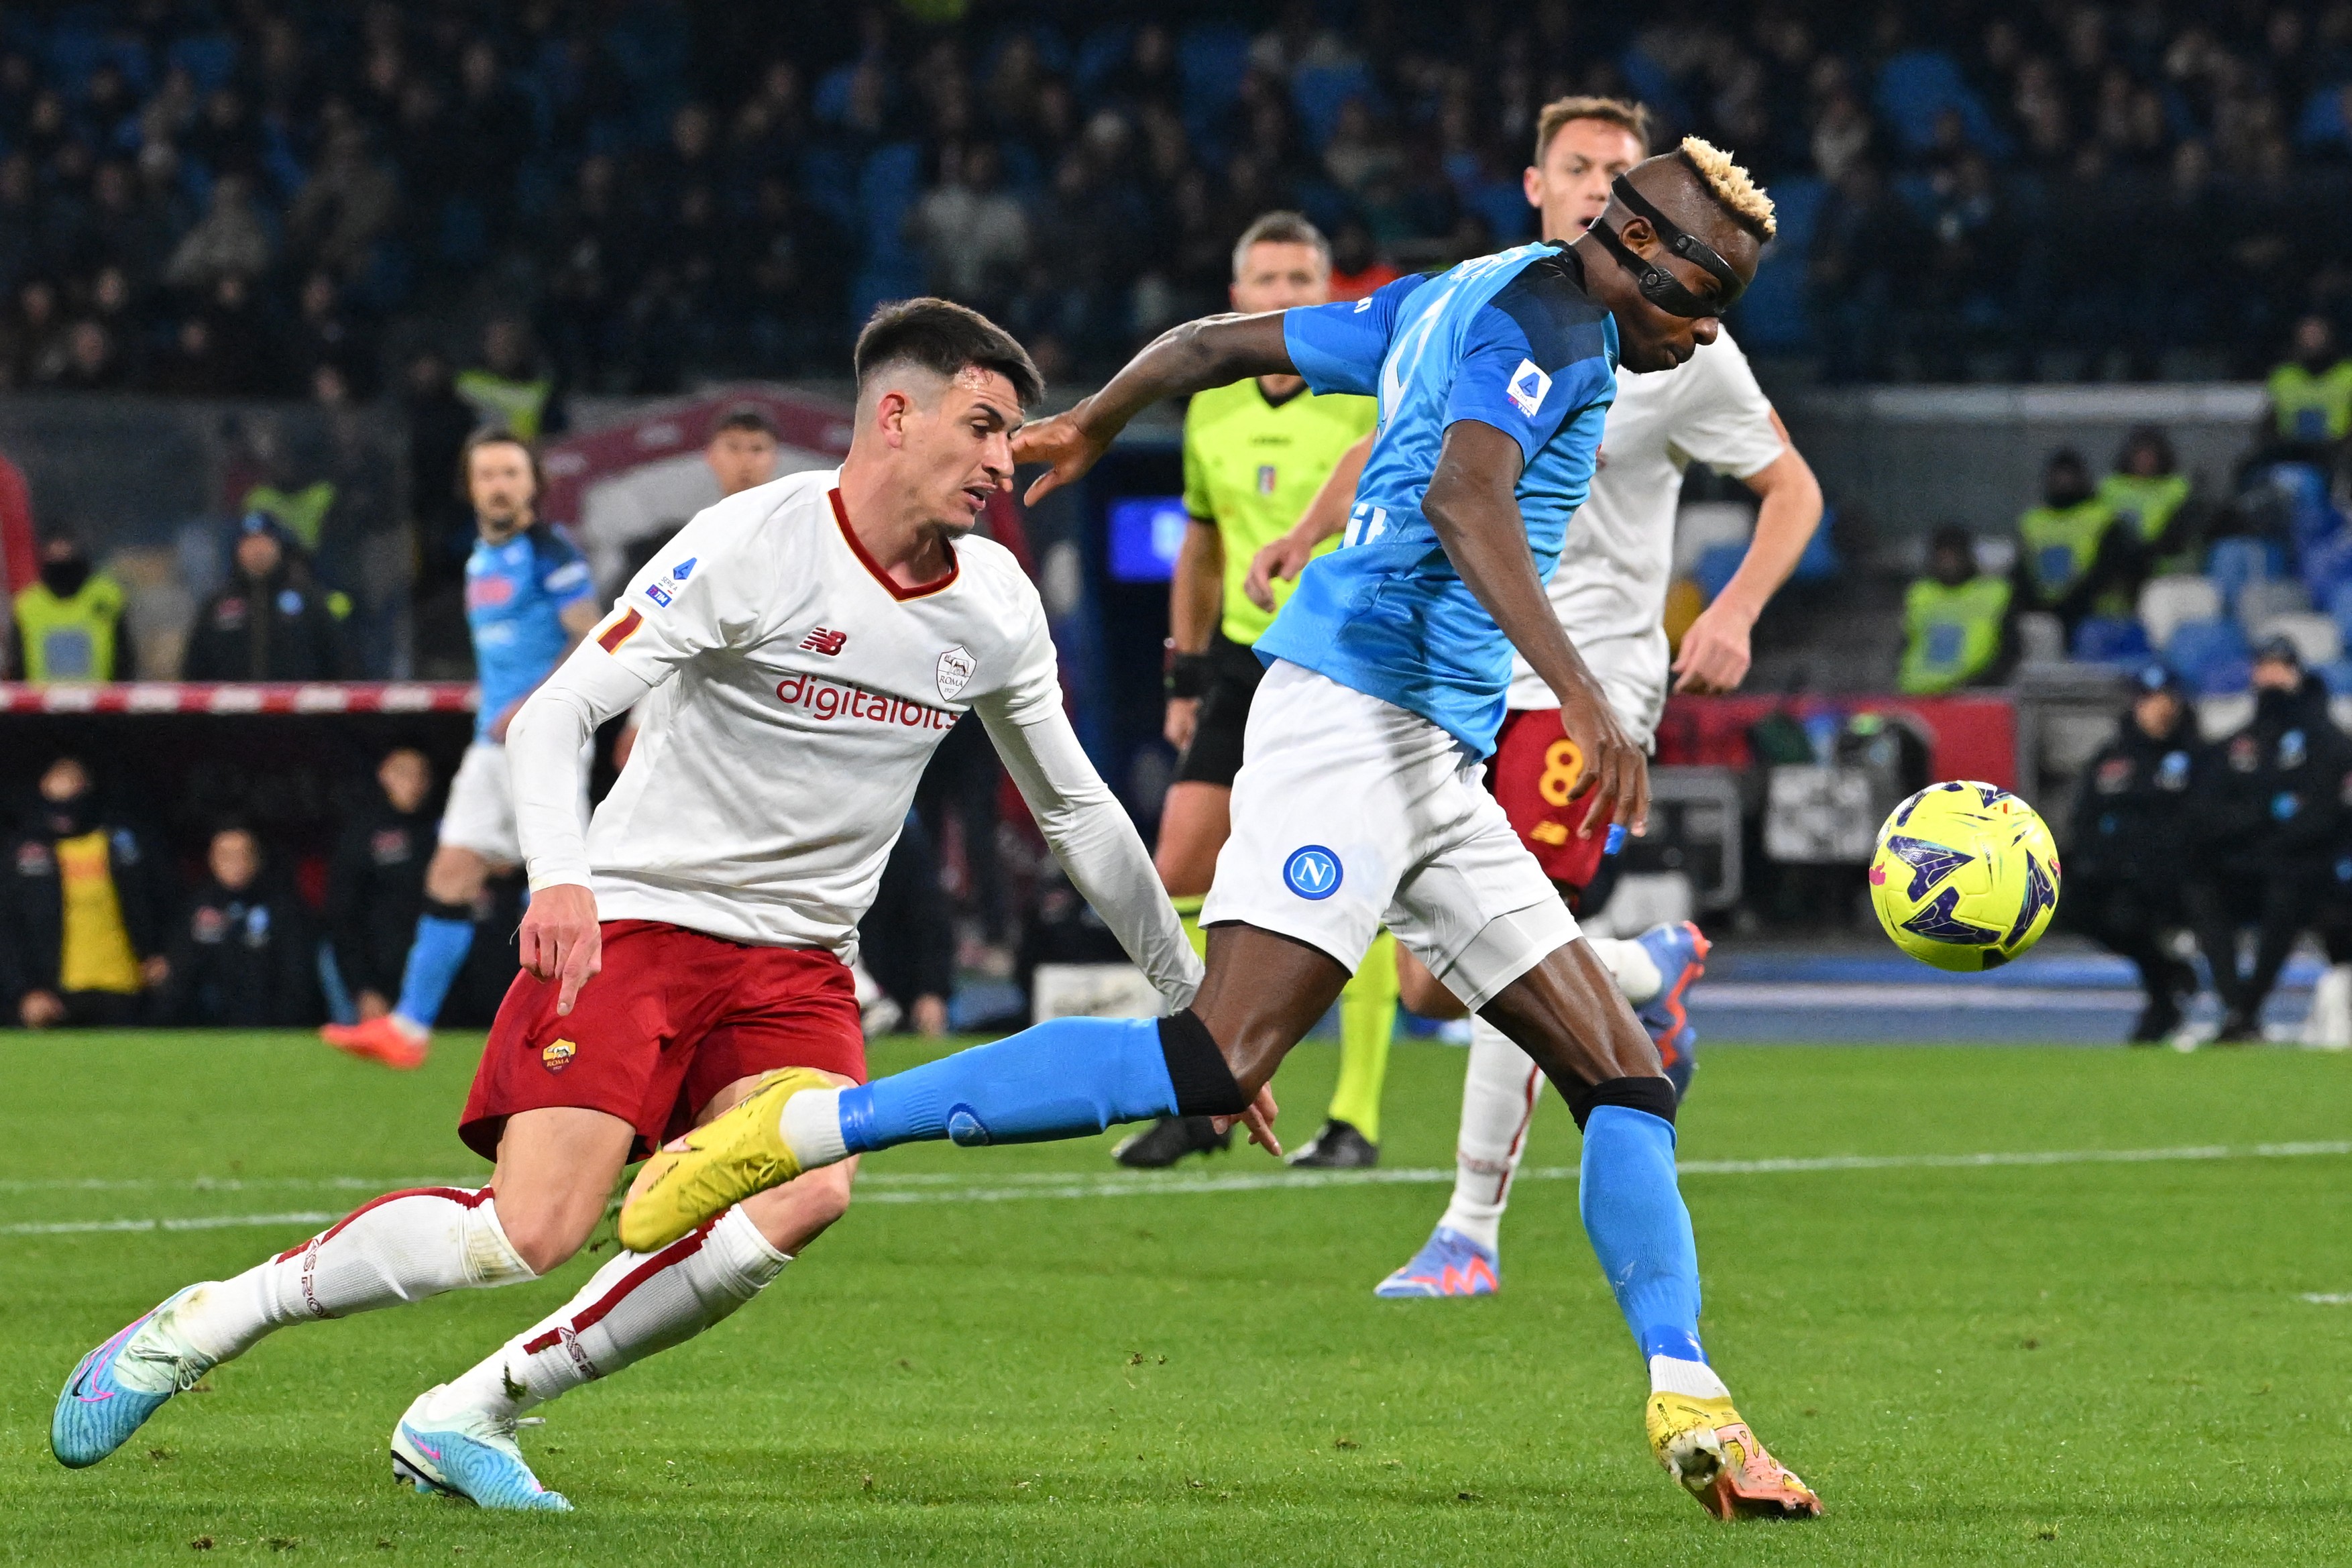 Napoli - AS Roma 1-1, ACUM, la Digi Sport 3. Trupa lui Mourinho egalează prin El Shaarawy